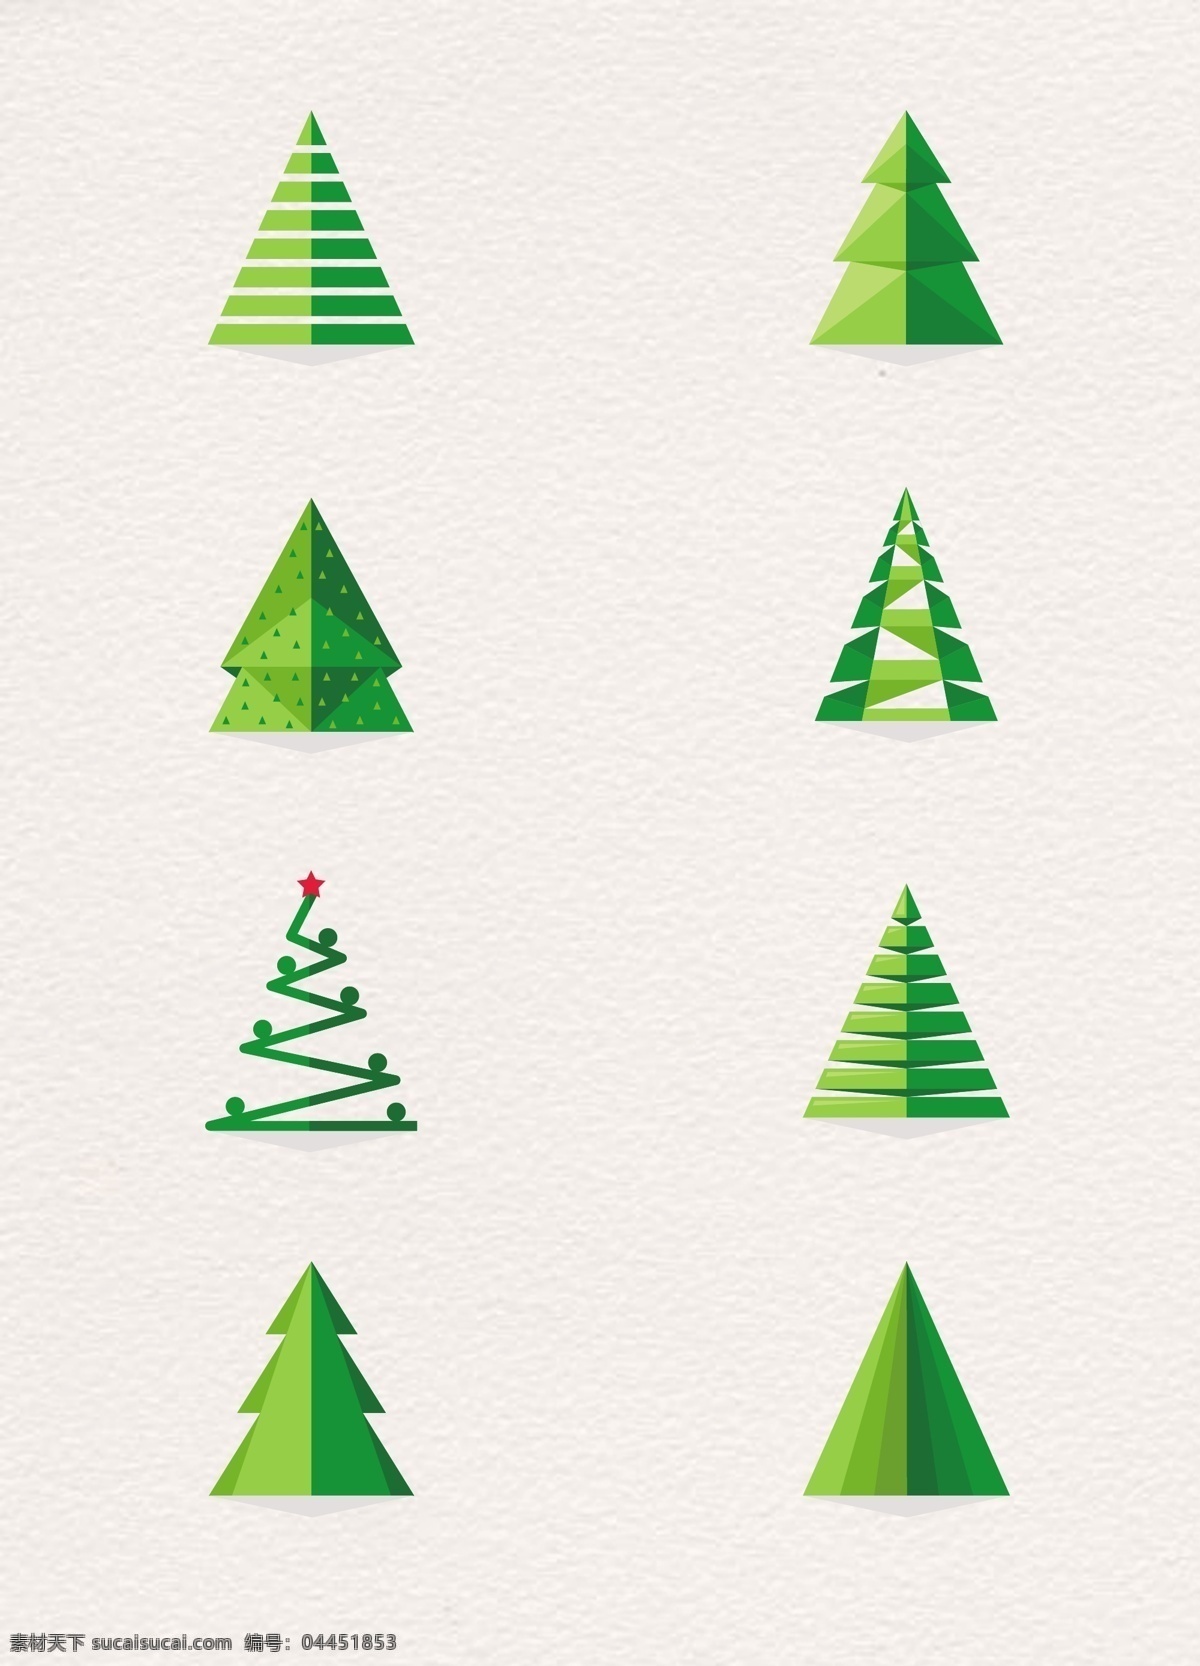 卡通 创意 剪纸 切割 圣诞树 绿色 圣诞节 节日元素 扁平化设计